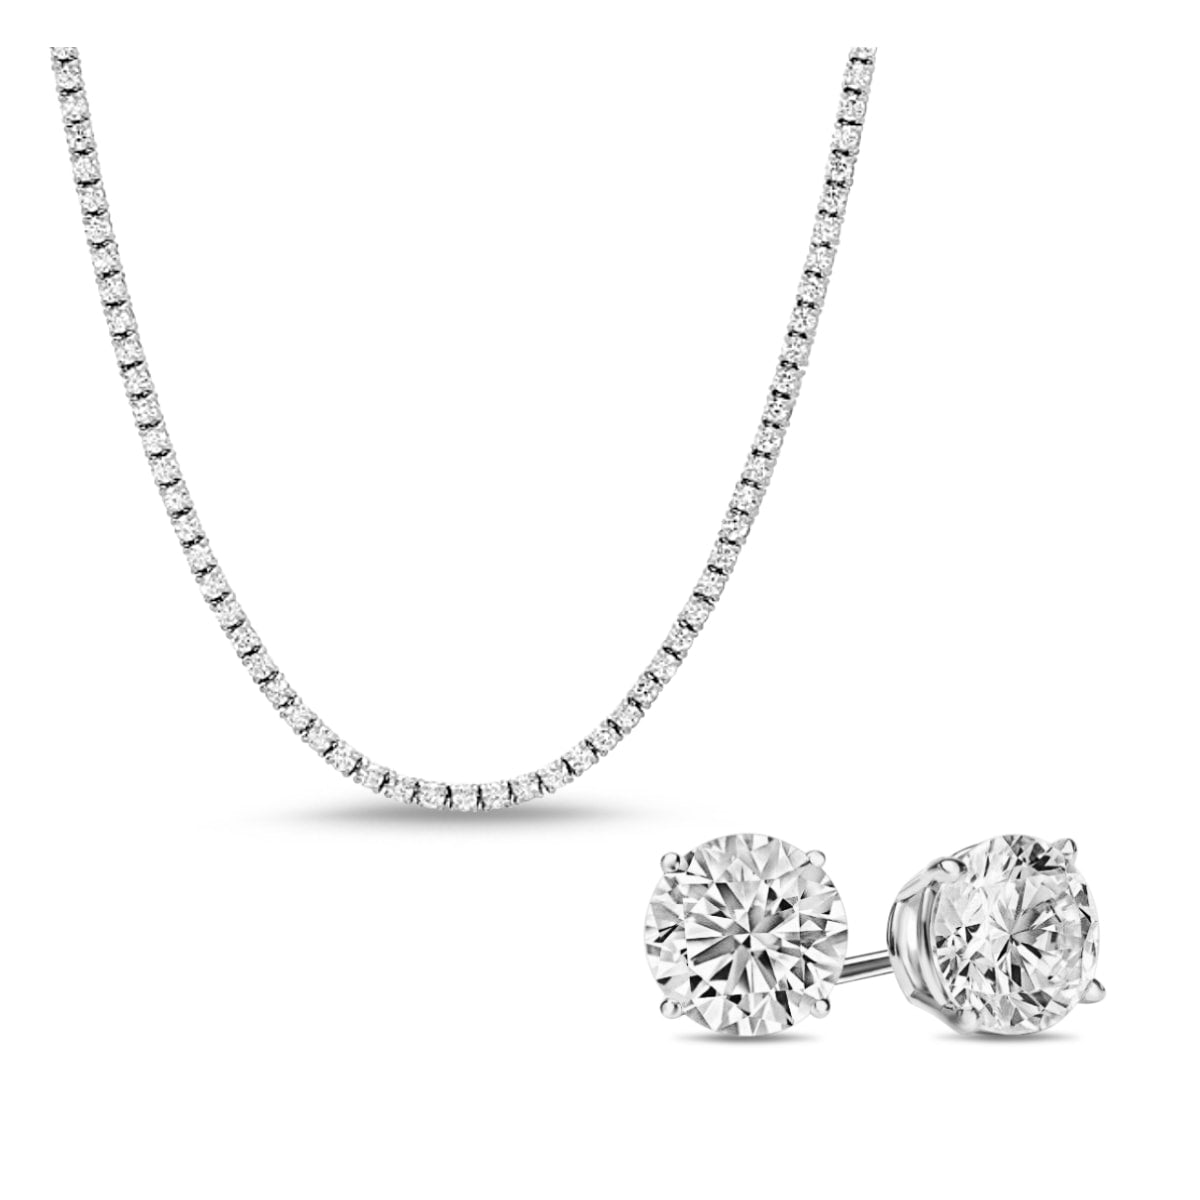 [PROMO SET] Monette 4 Prong Necklace Earrings Diamond Set in 18k White Gold Vermeil